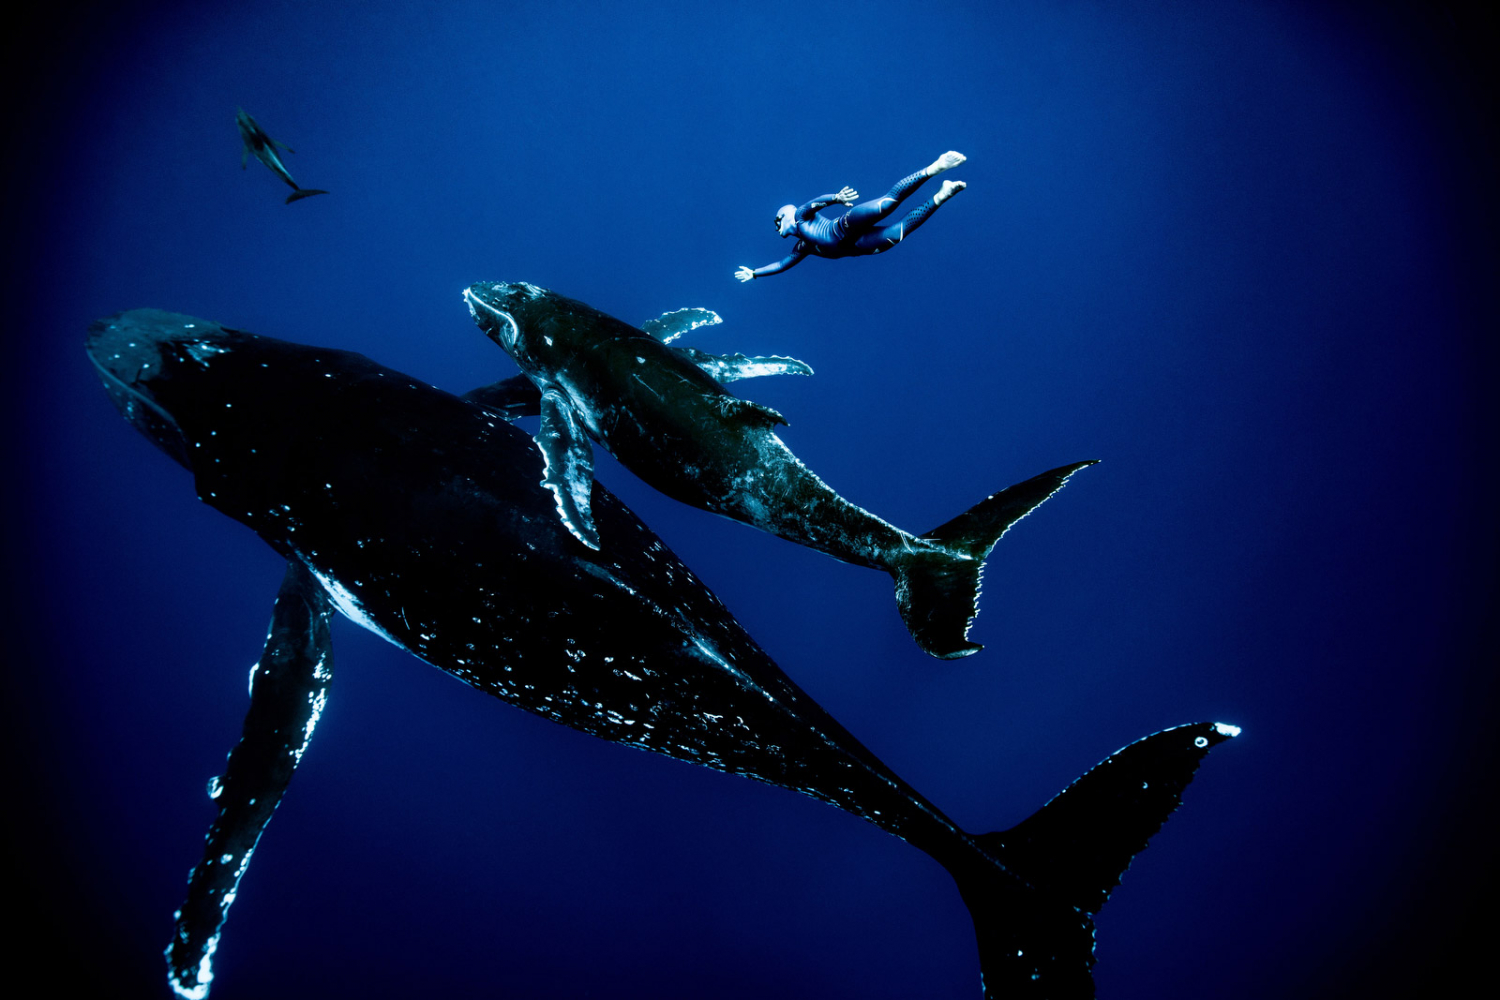 Cảnh bơi lặn cùng cá voi ở đảo Rurutu của Néry. Đa số những bức ảnh chụp anh đều có màu xanh chủ đạo của đại dương, thi thoảng xen kẽ một vài vệt nắng ở vùng nước nông. Khi xuống độ sâu lớn, Néry phải sử dụng thêm đai tăng trọng lượng quanh bộ đồ bơi.